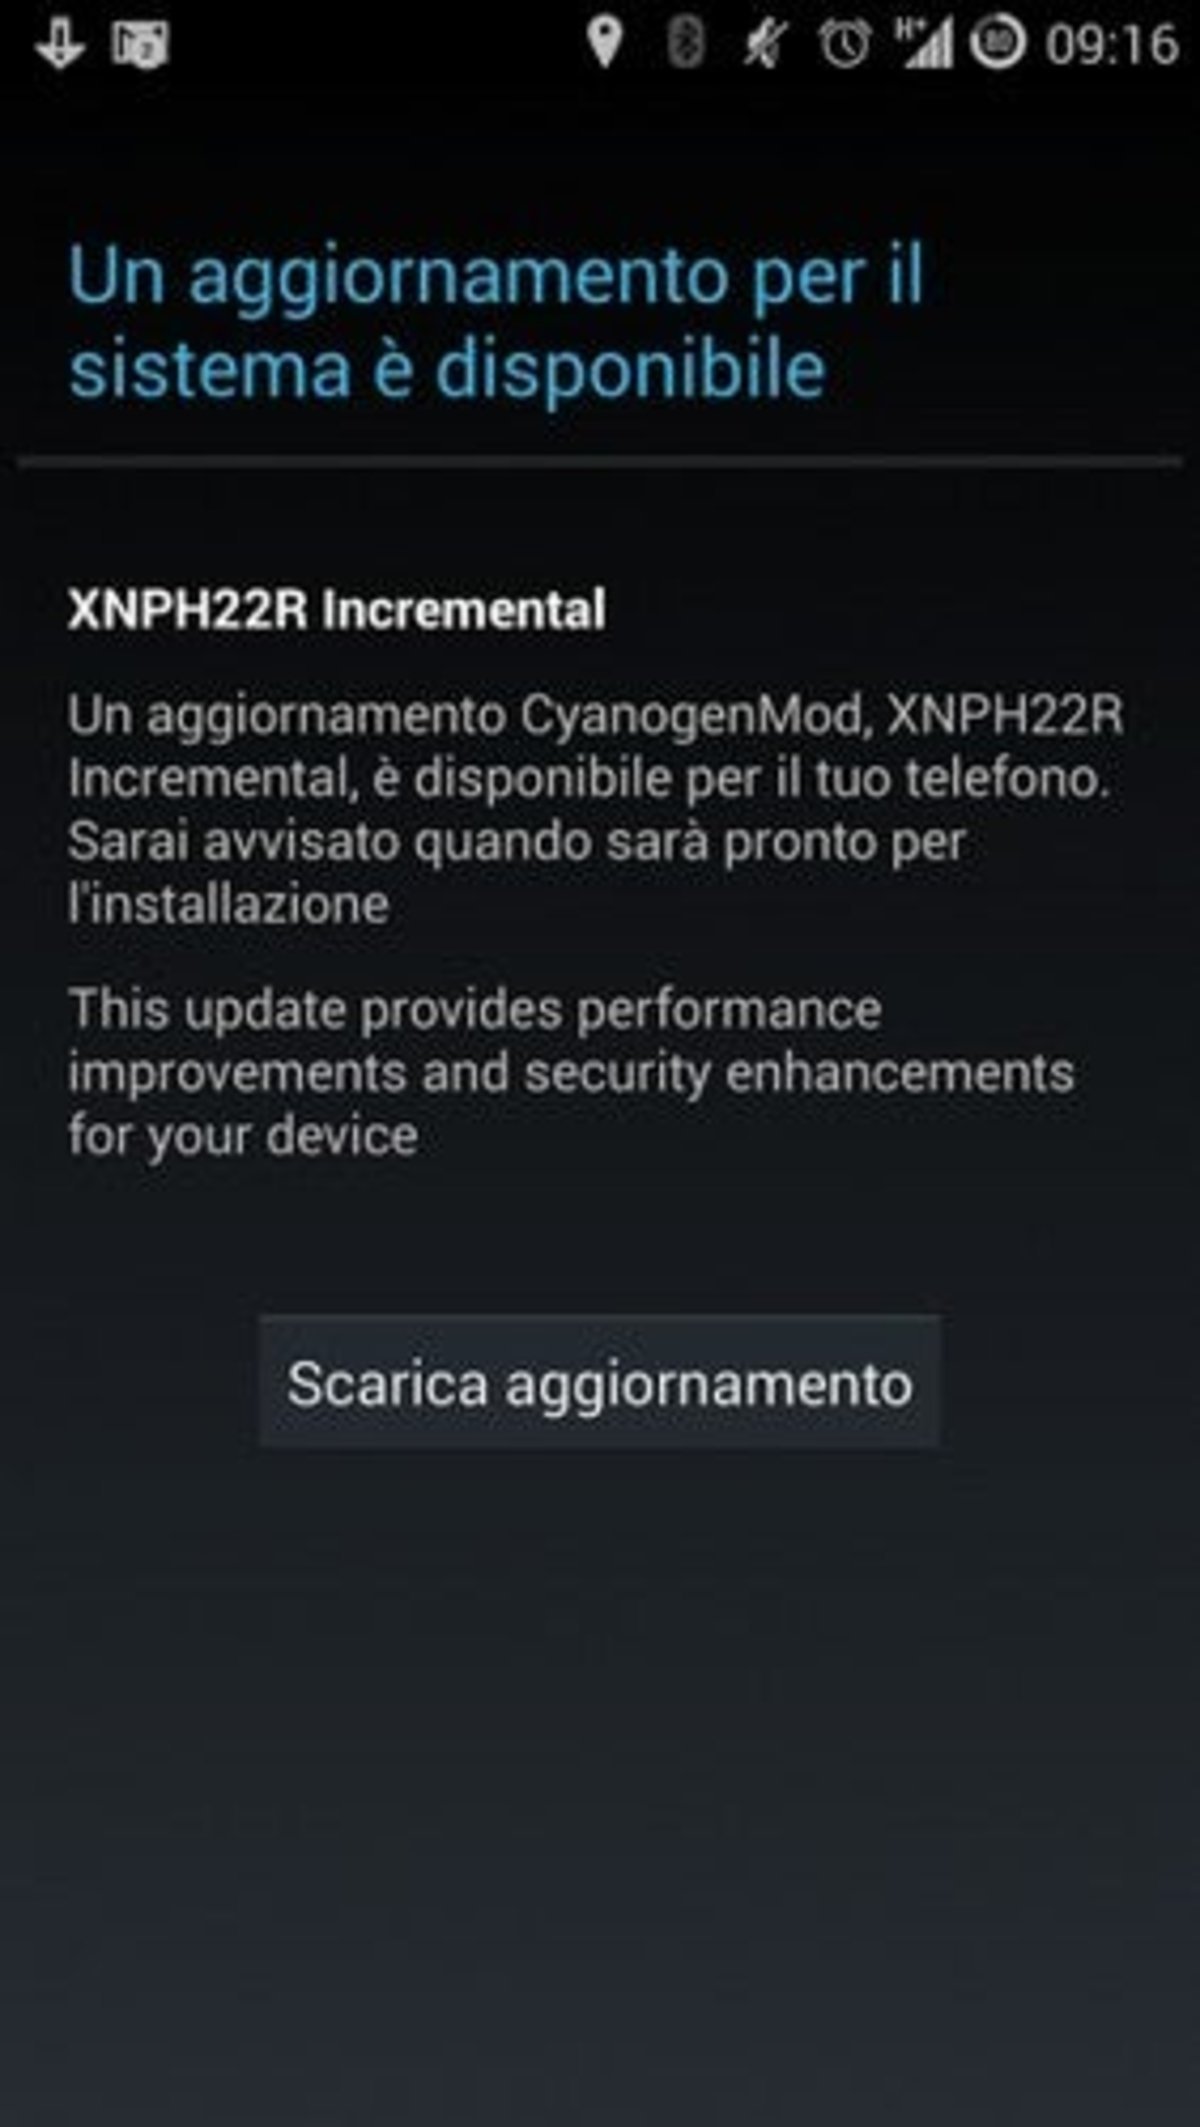 OnePlus One CyanogenMod